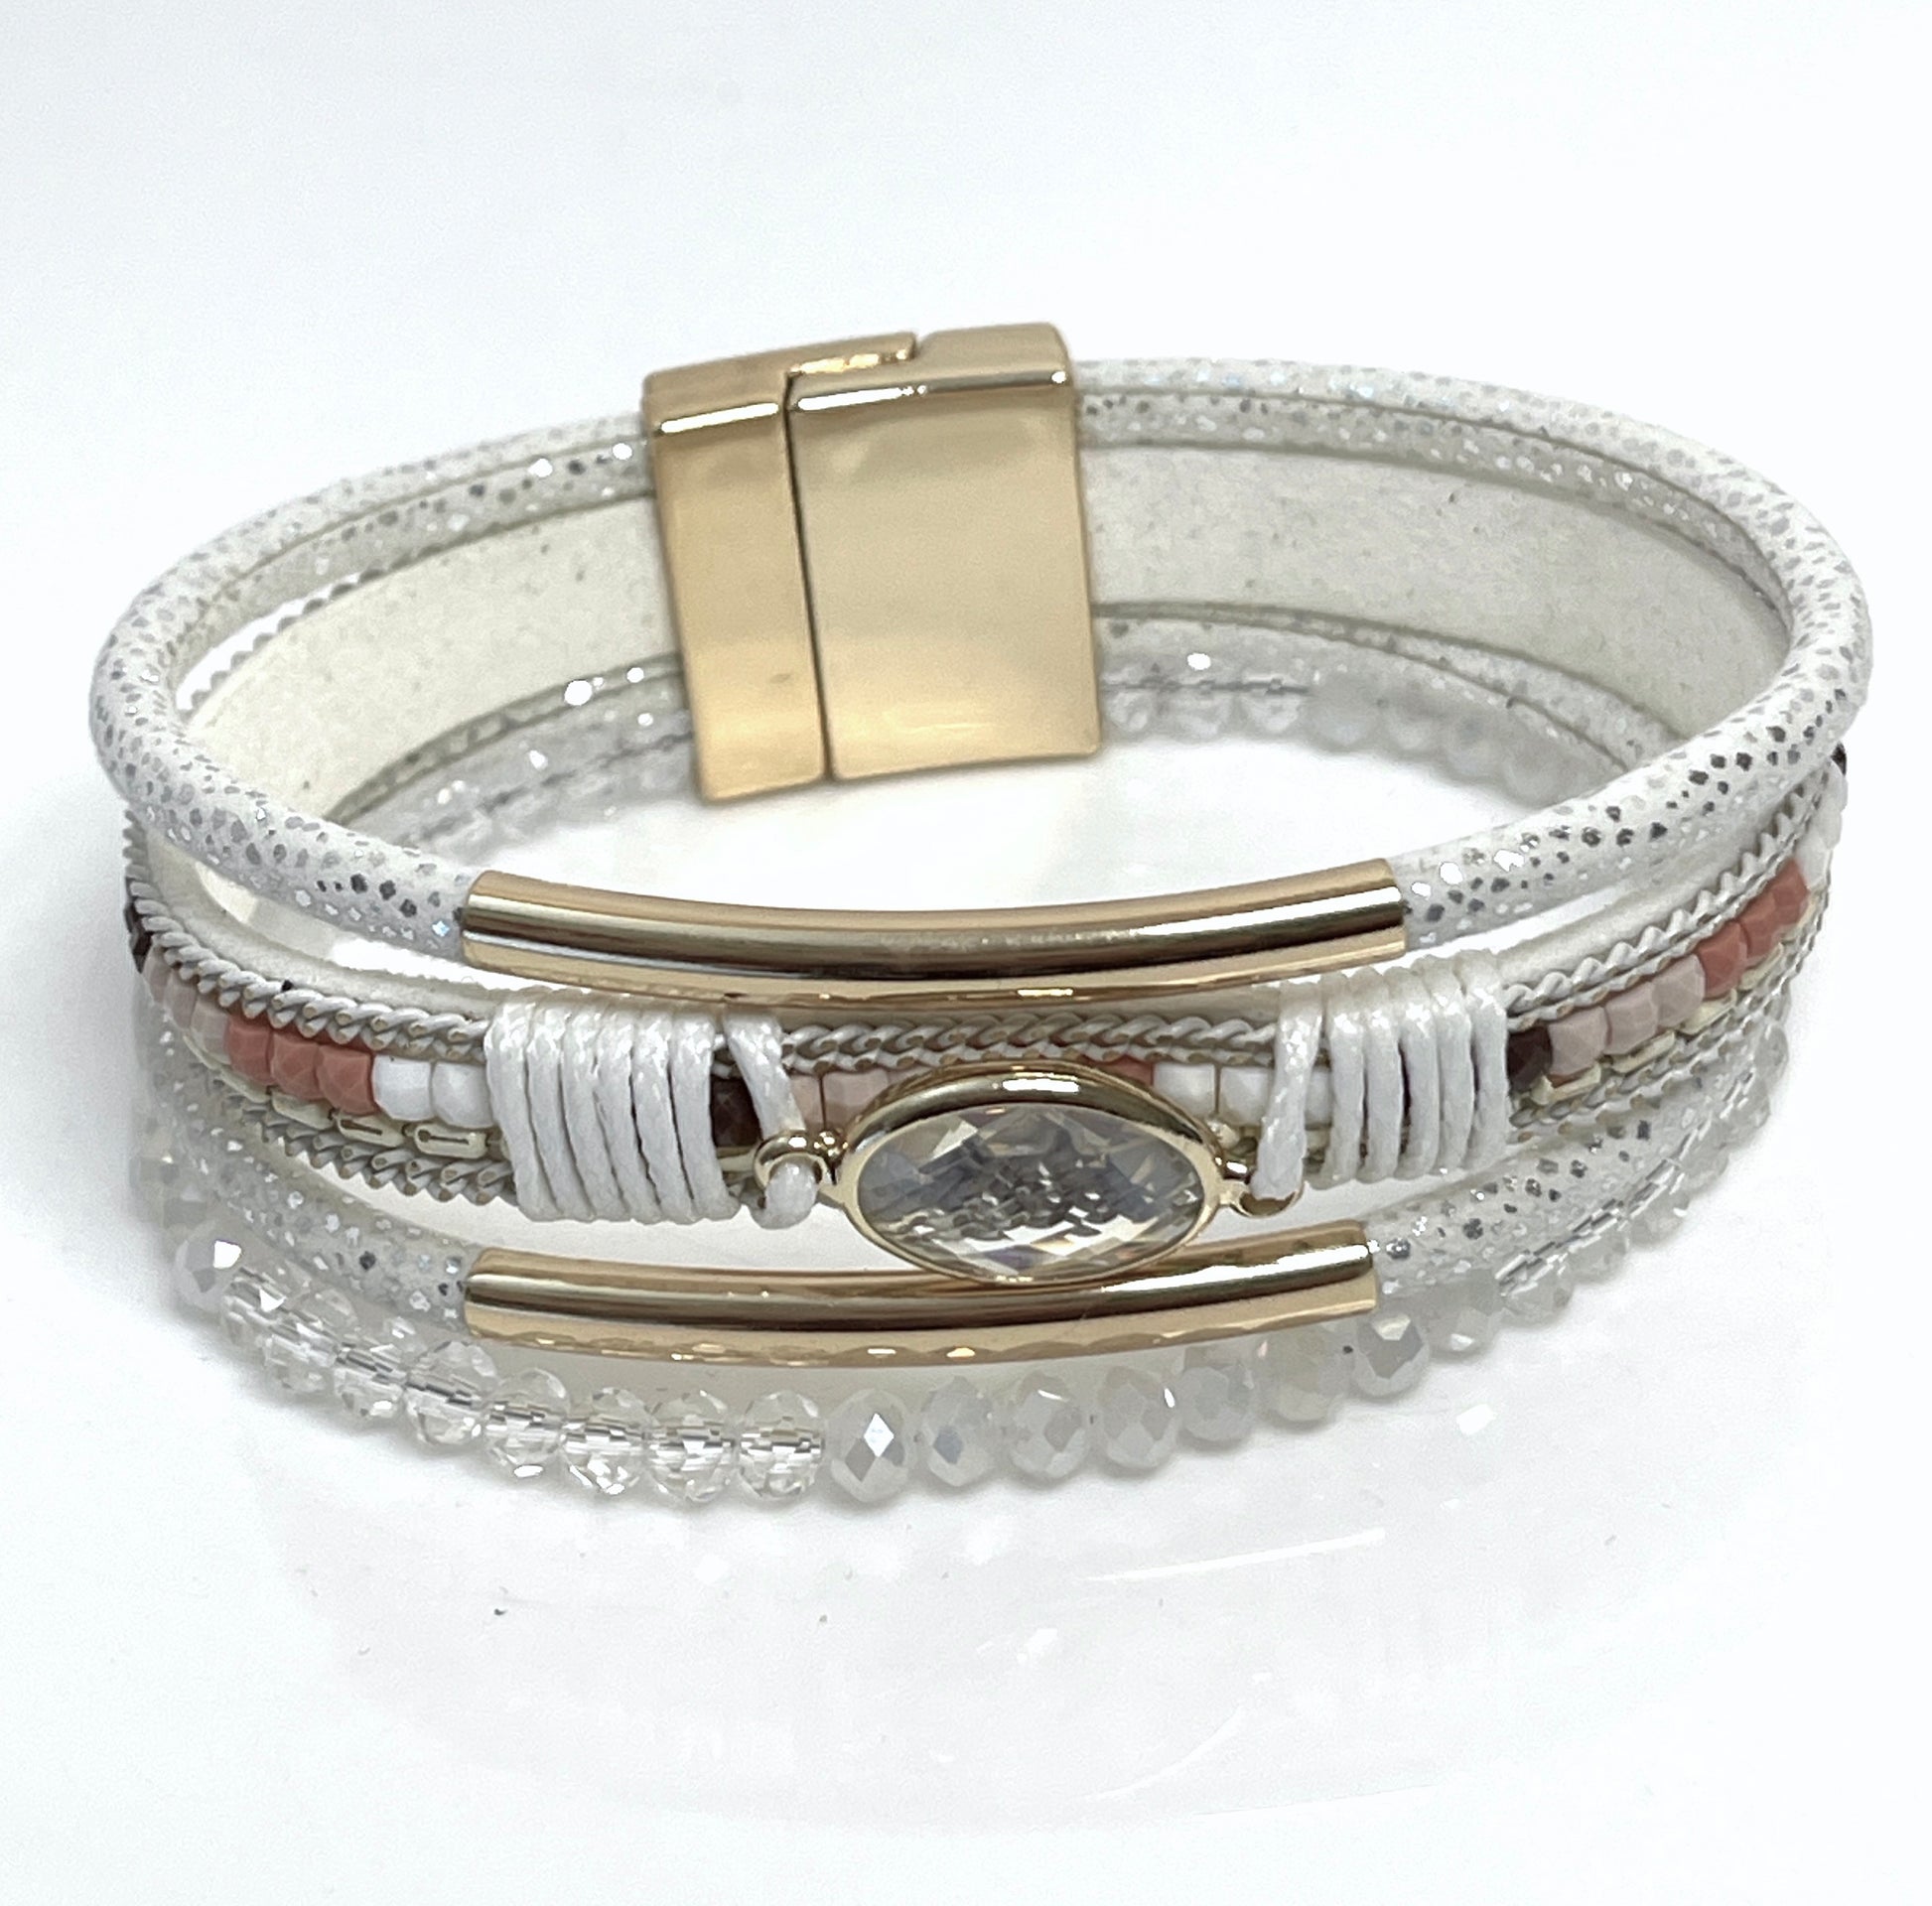 White Gold Wide Multi Strand Bracelet, Chunky Statement Bracelet, Mixed Material Bracelet, Boho Beaded Bracelets for Women